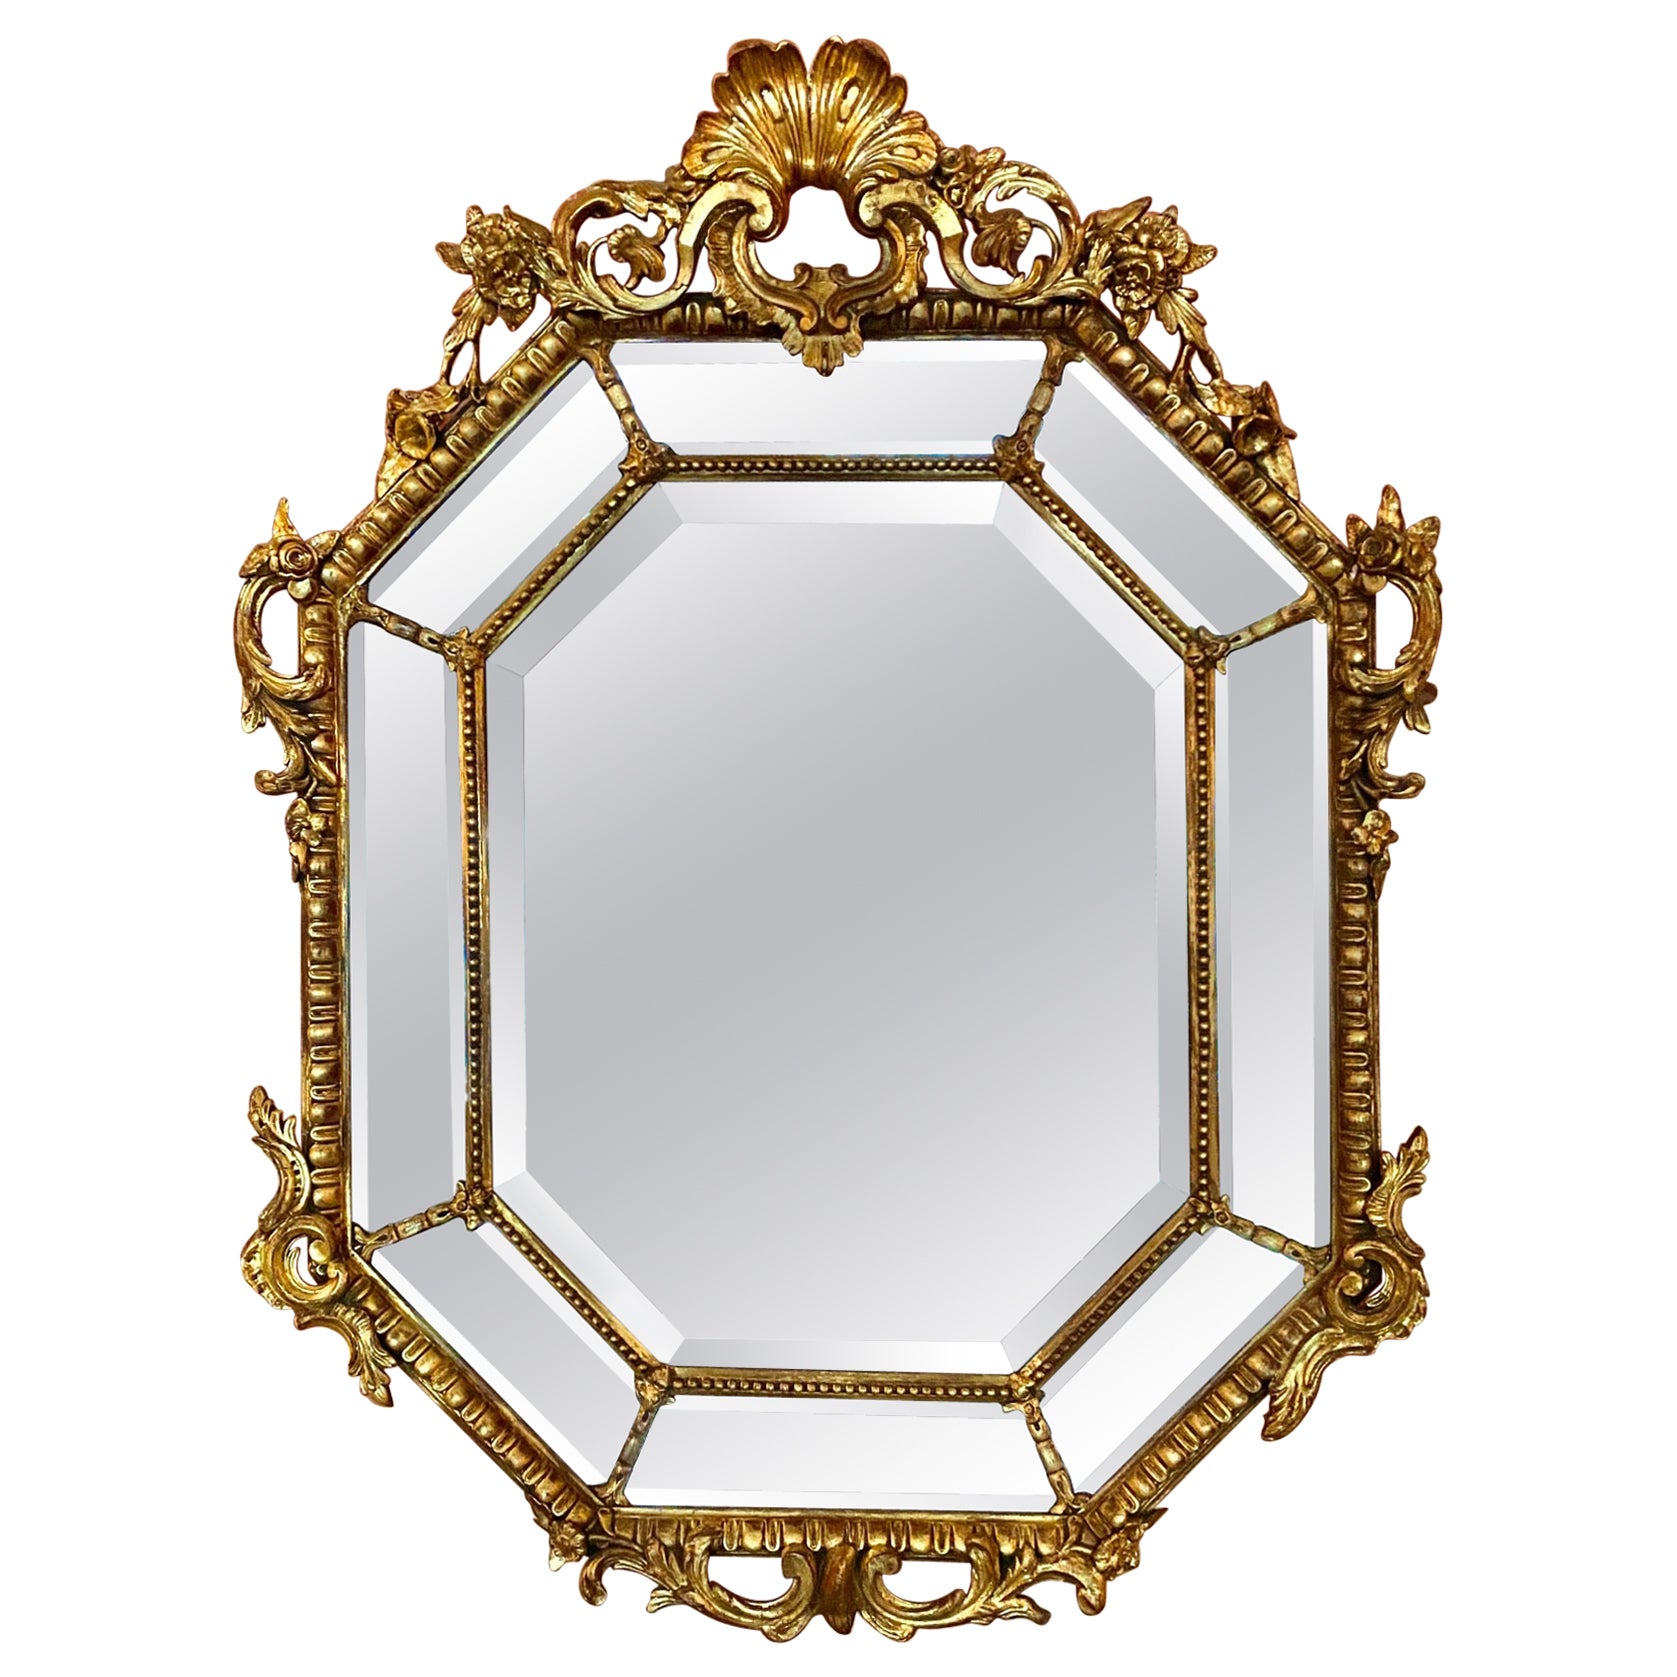 Élégant miroir en bois doré d'époque Napoléon III français